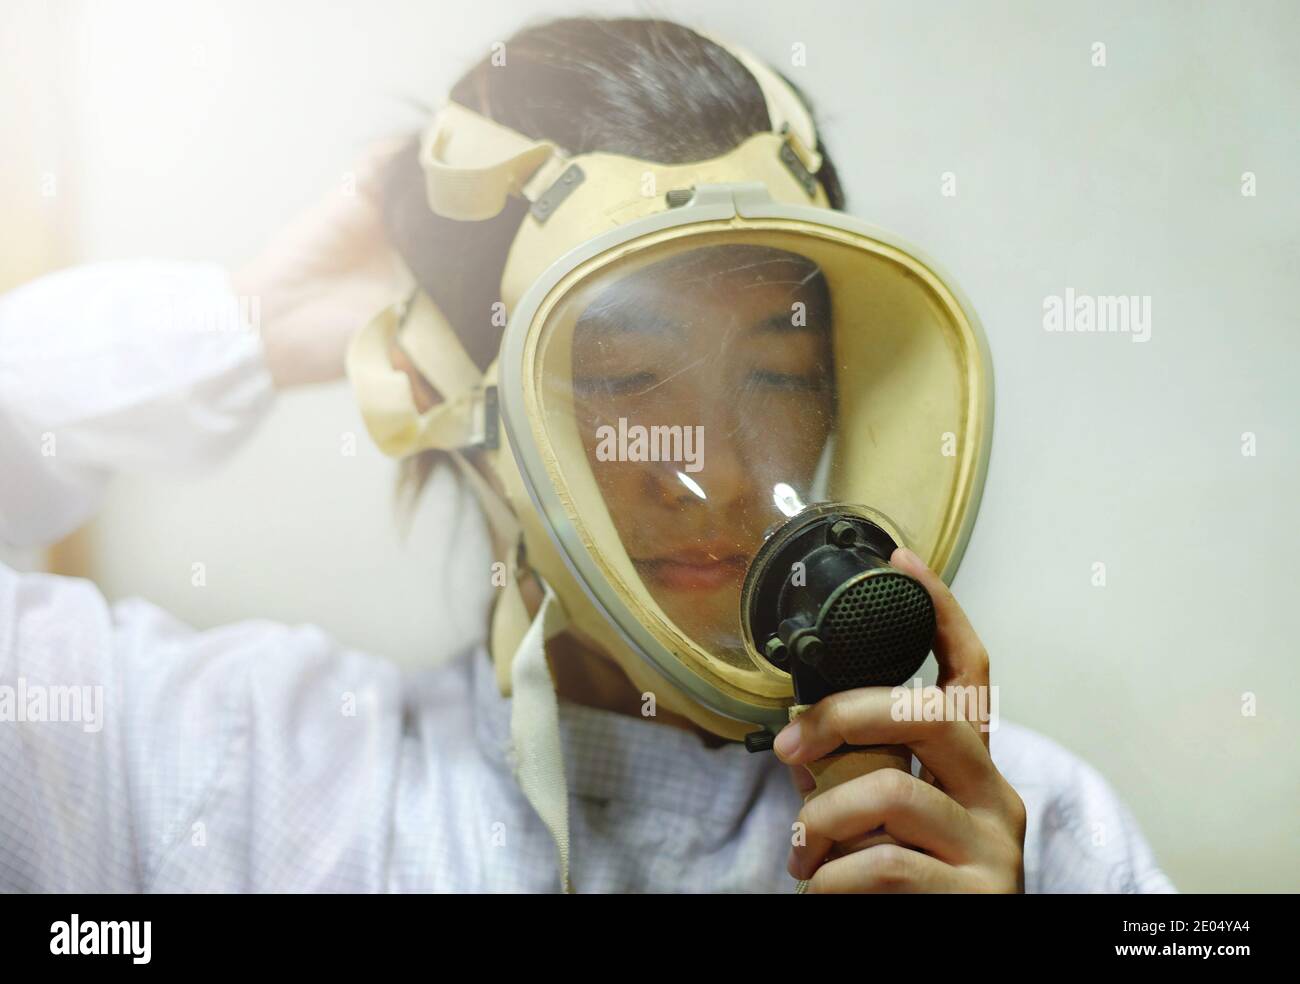 Une femme asiatique tirant sur un masque de protection complet du visage à oxygène, un manteau blanc et des gants en caoutchouc, se préparer à travailler dans un laboratoire biochimique. Banque D'Images